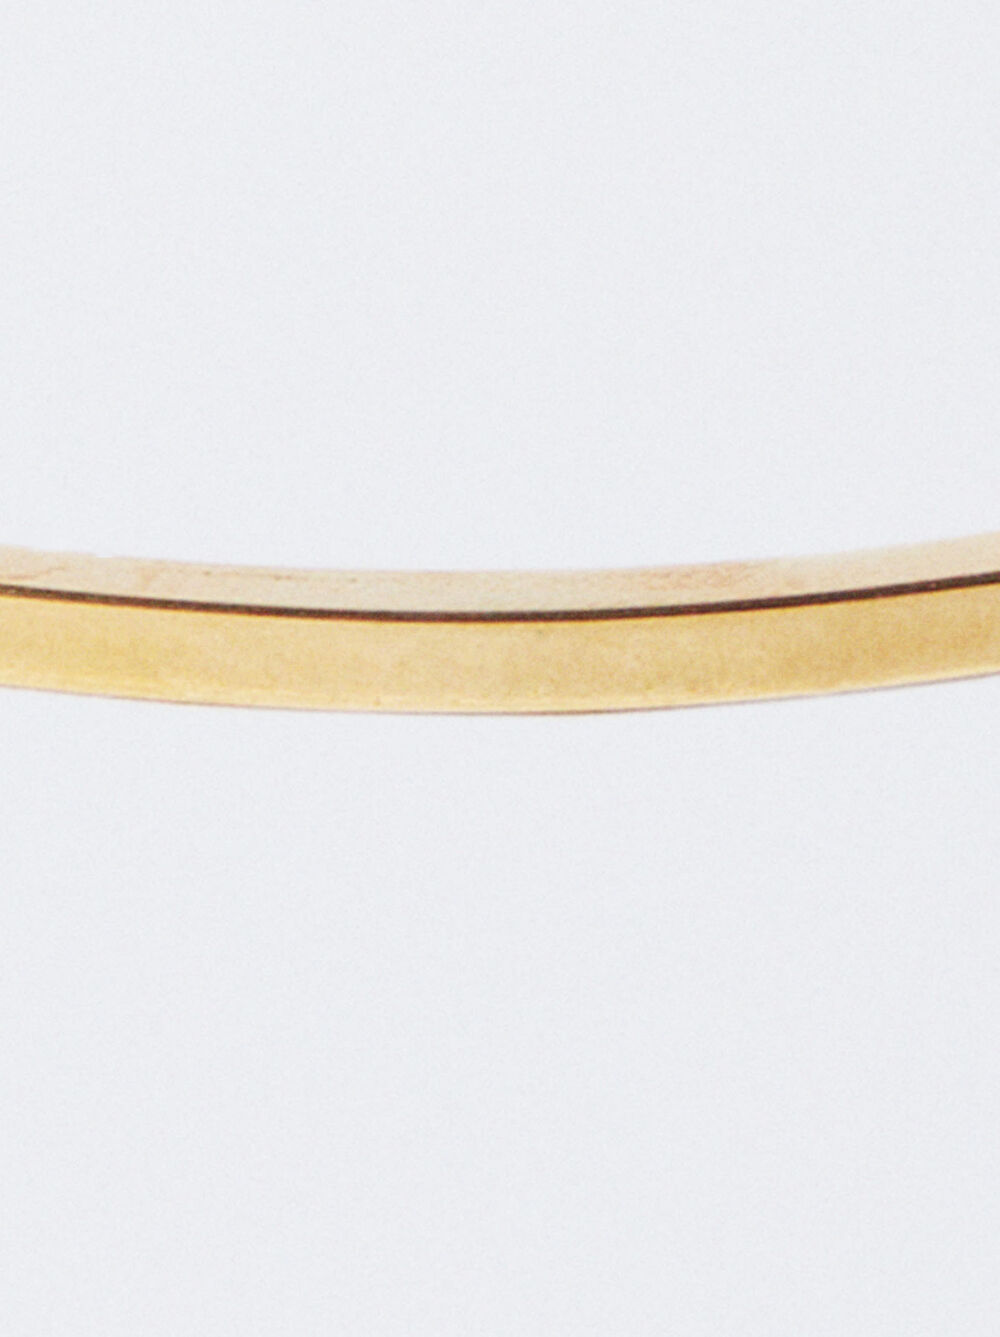 Online Exclusive - Stainless Steel Golden Bracelet